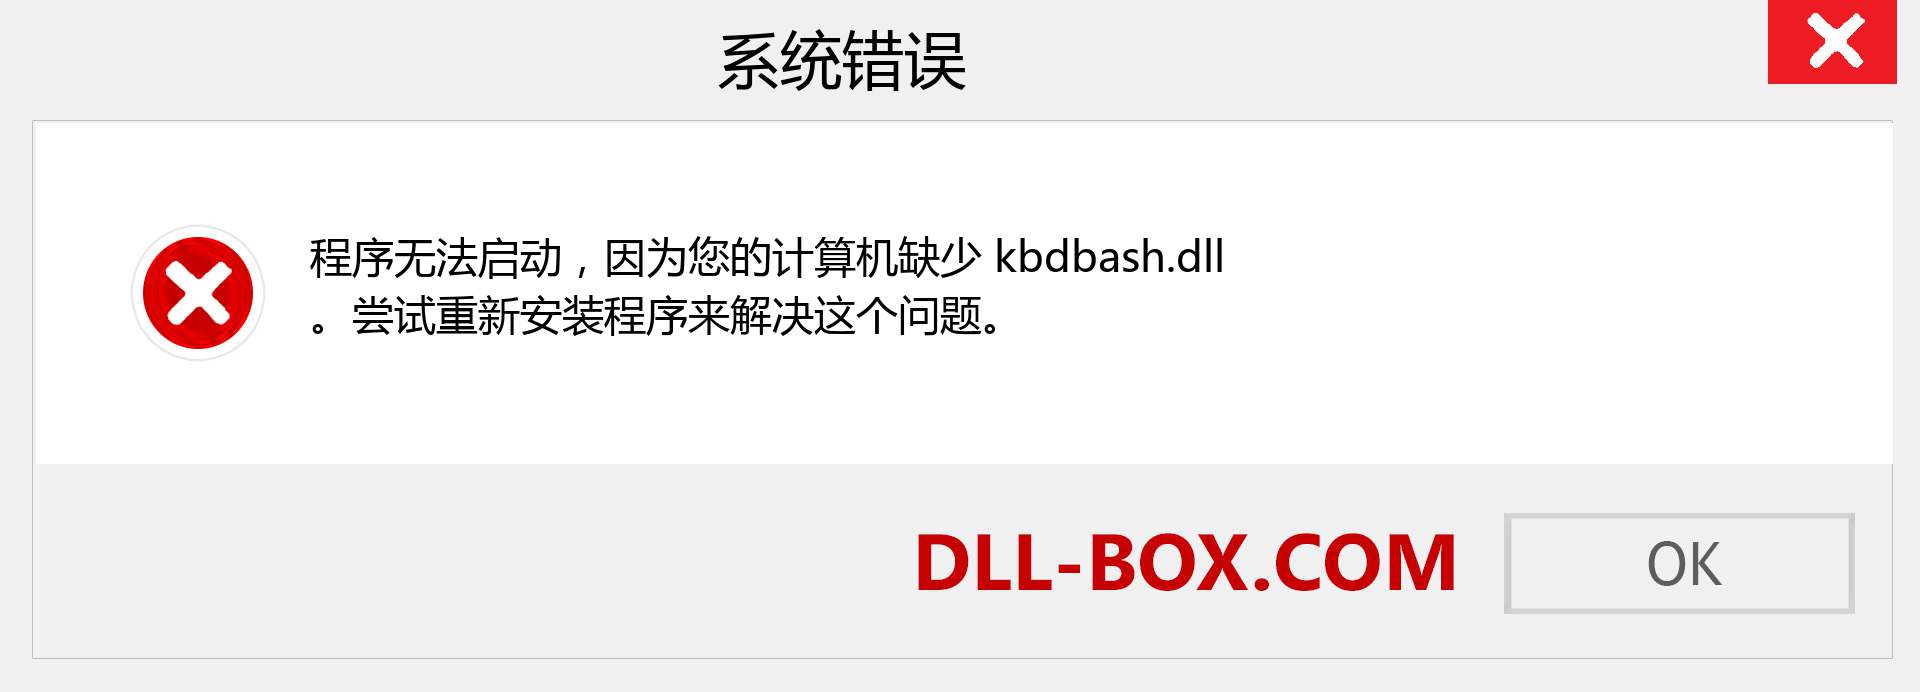 kbdbash.dll 文件丢失？。 适用于 Windows 7、8、10 的下载 - 修复 Windows、照片、图像上的 kbdbash dll 丢失错误